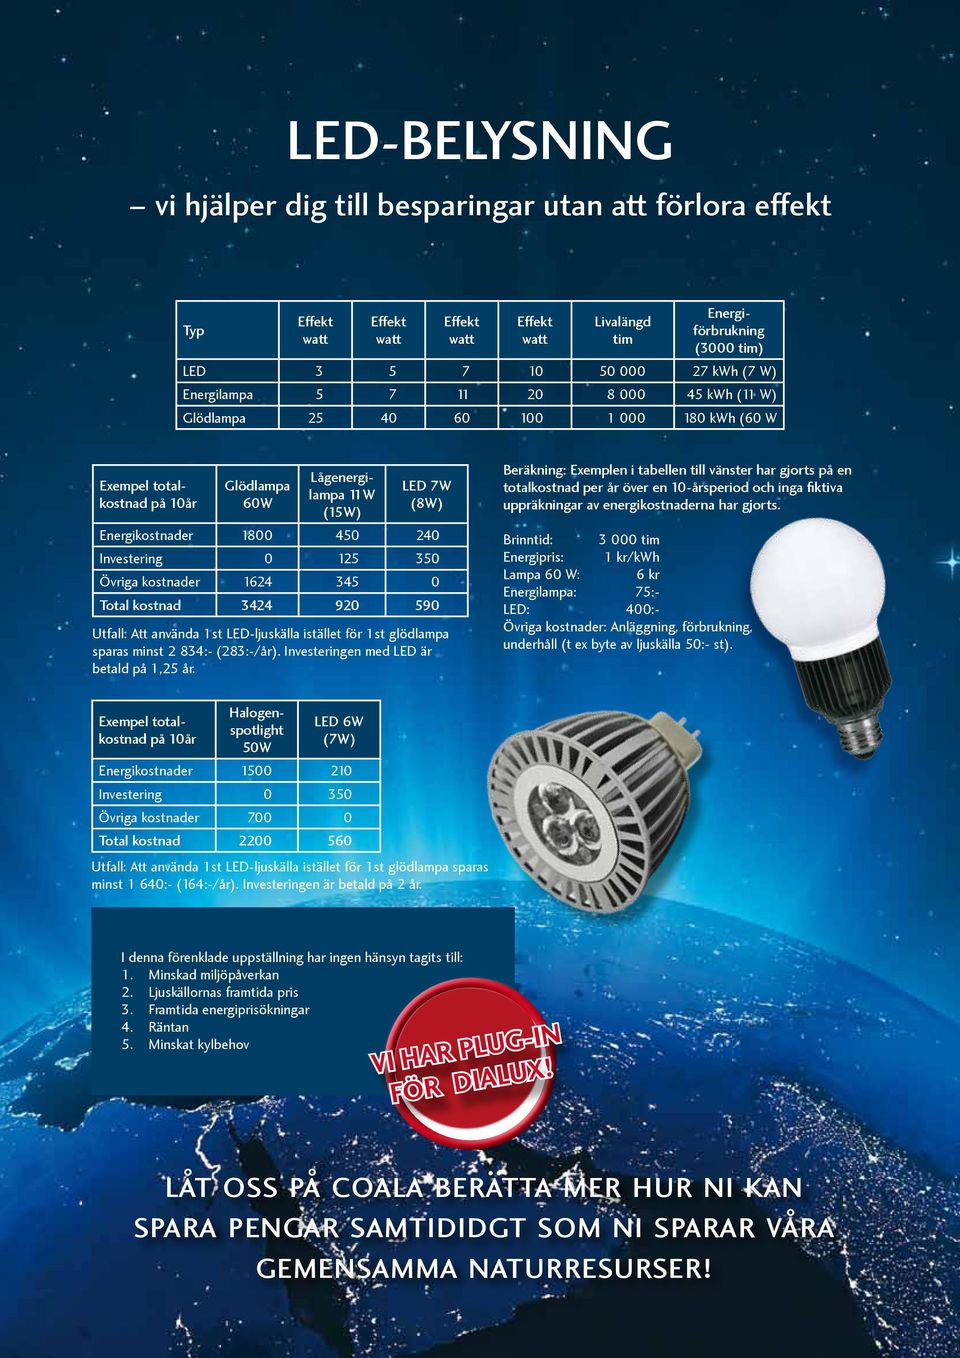 0 Total kostnad 3424 920 590 Utfall: Att använda 1st LED-ljuskälla istället för 1st glödlampa sparas minst 2 834:- (283:-/år). Investeringen med LED är betald på 1,25 år.